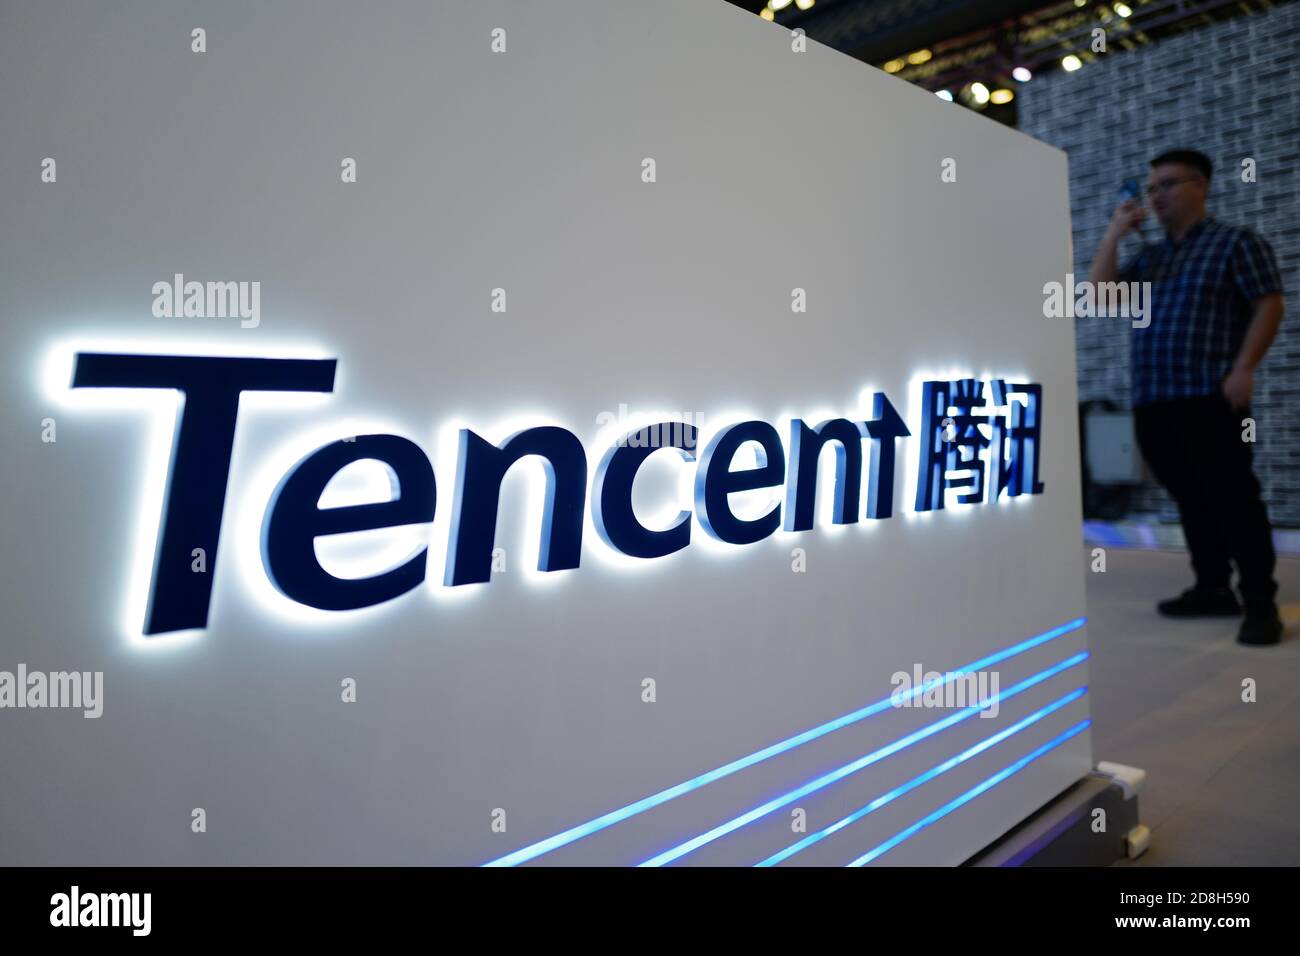 In questa foto non localizzata, il logo di Tencent, holding multinazionale cinese di conglomerati tecnologici, è visto il suo stand durante una mostra, Foto Stock